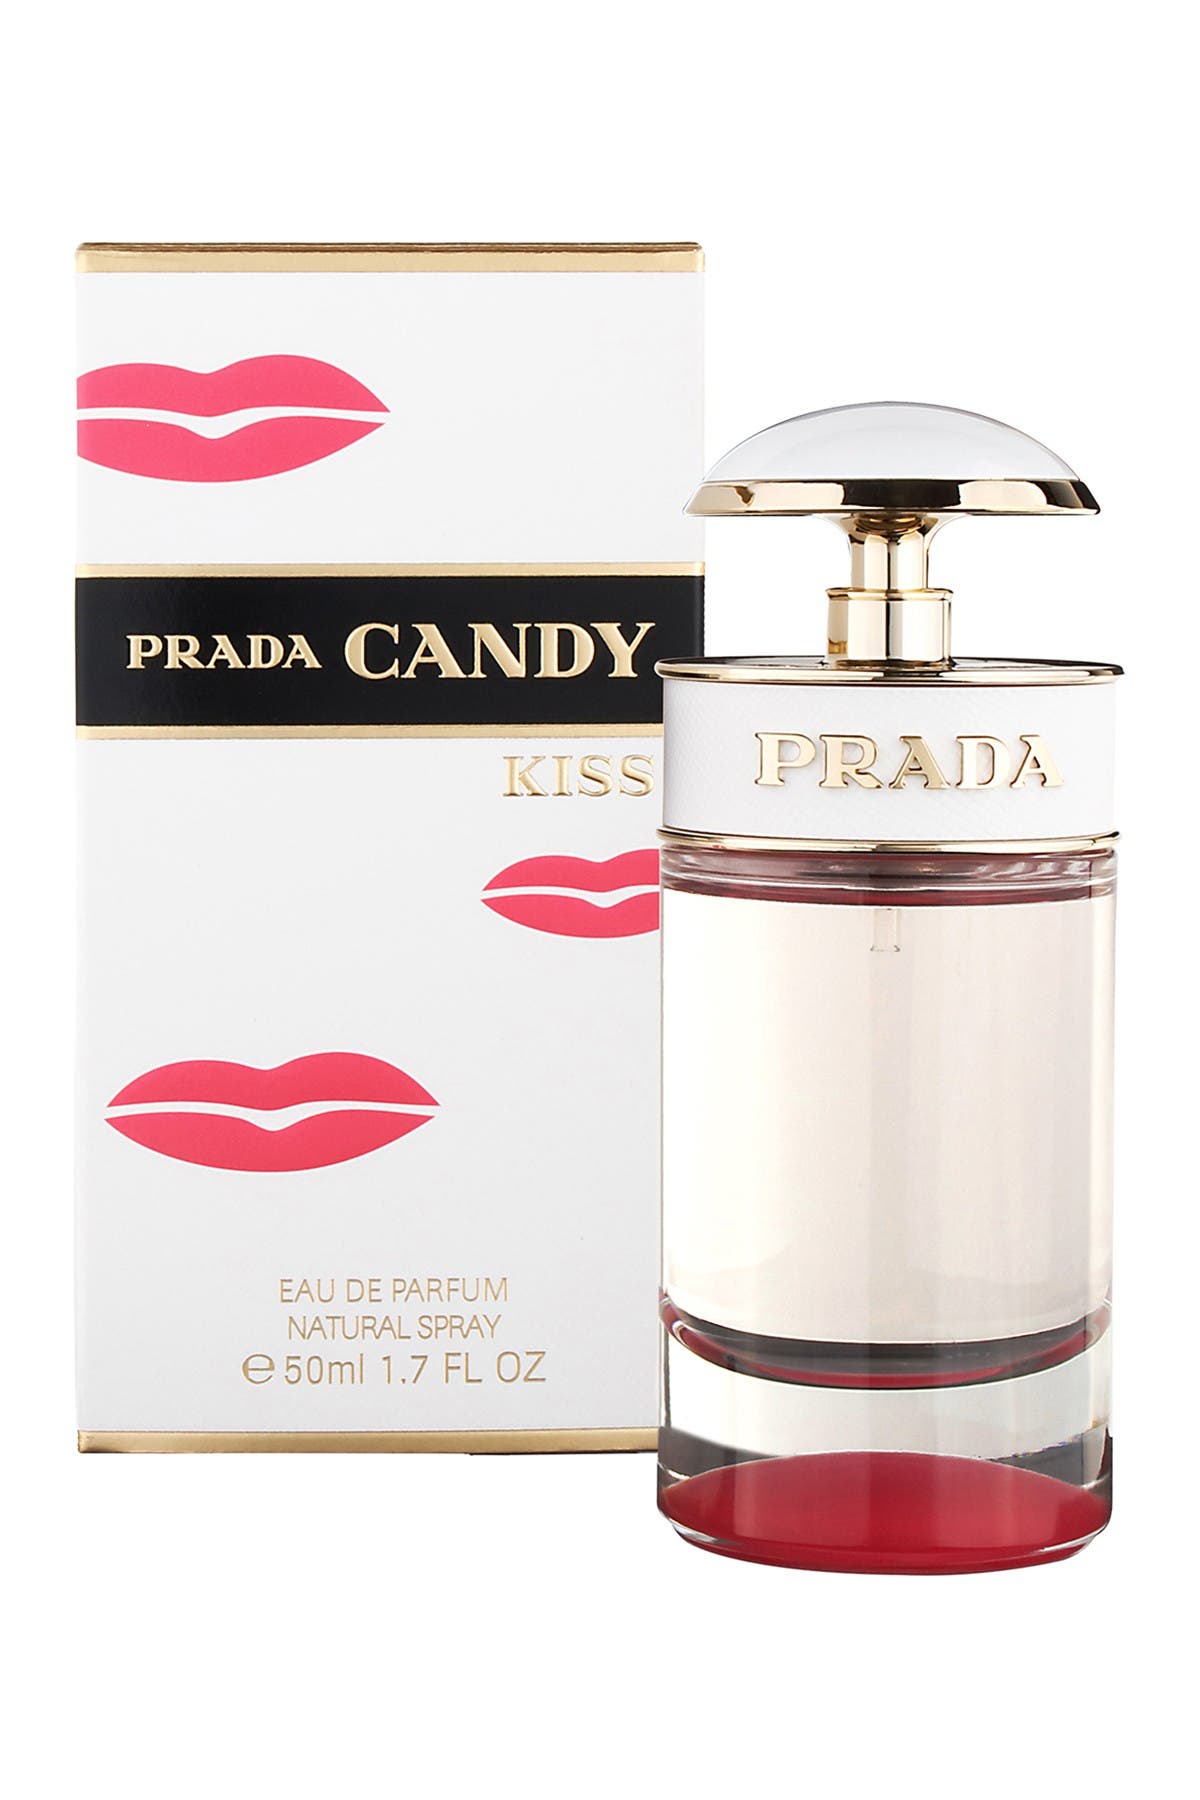 Prada | Candy Kiss Eau de Parfum - 1.7 